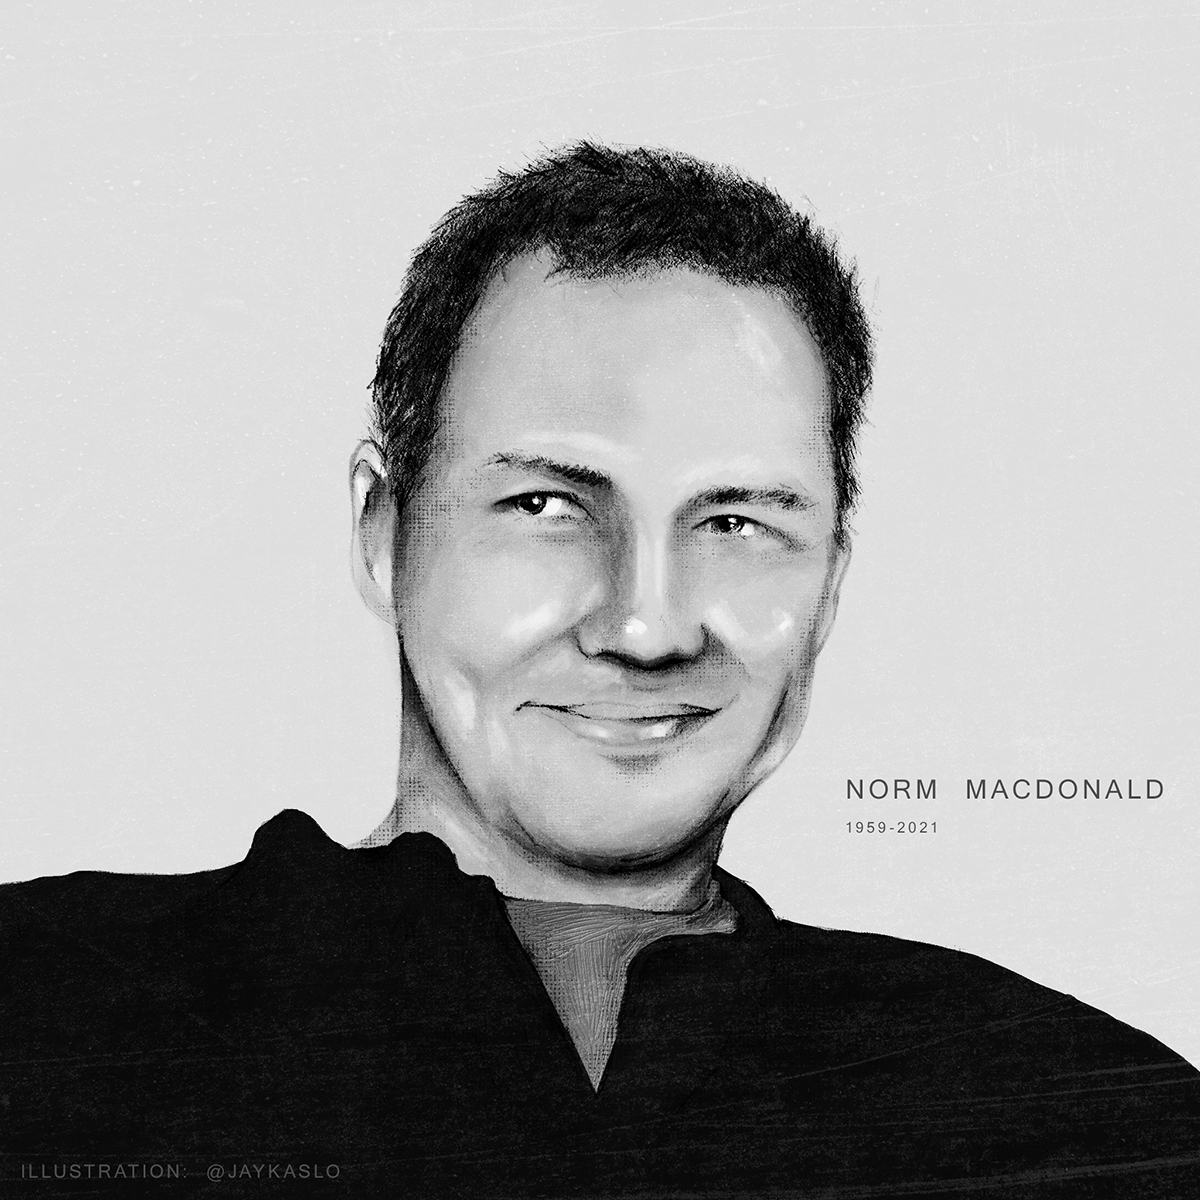 Norm Macdonald portrait